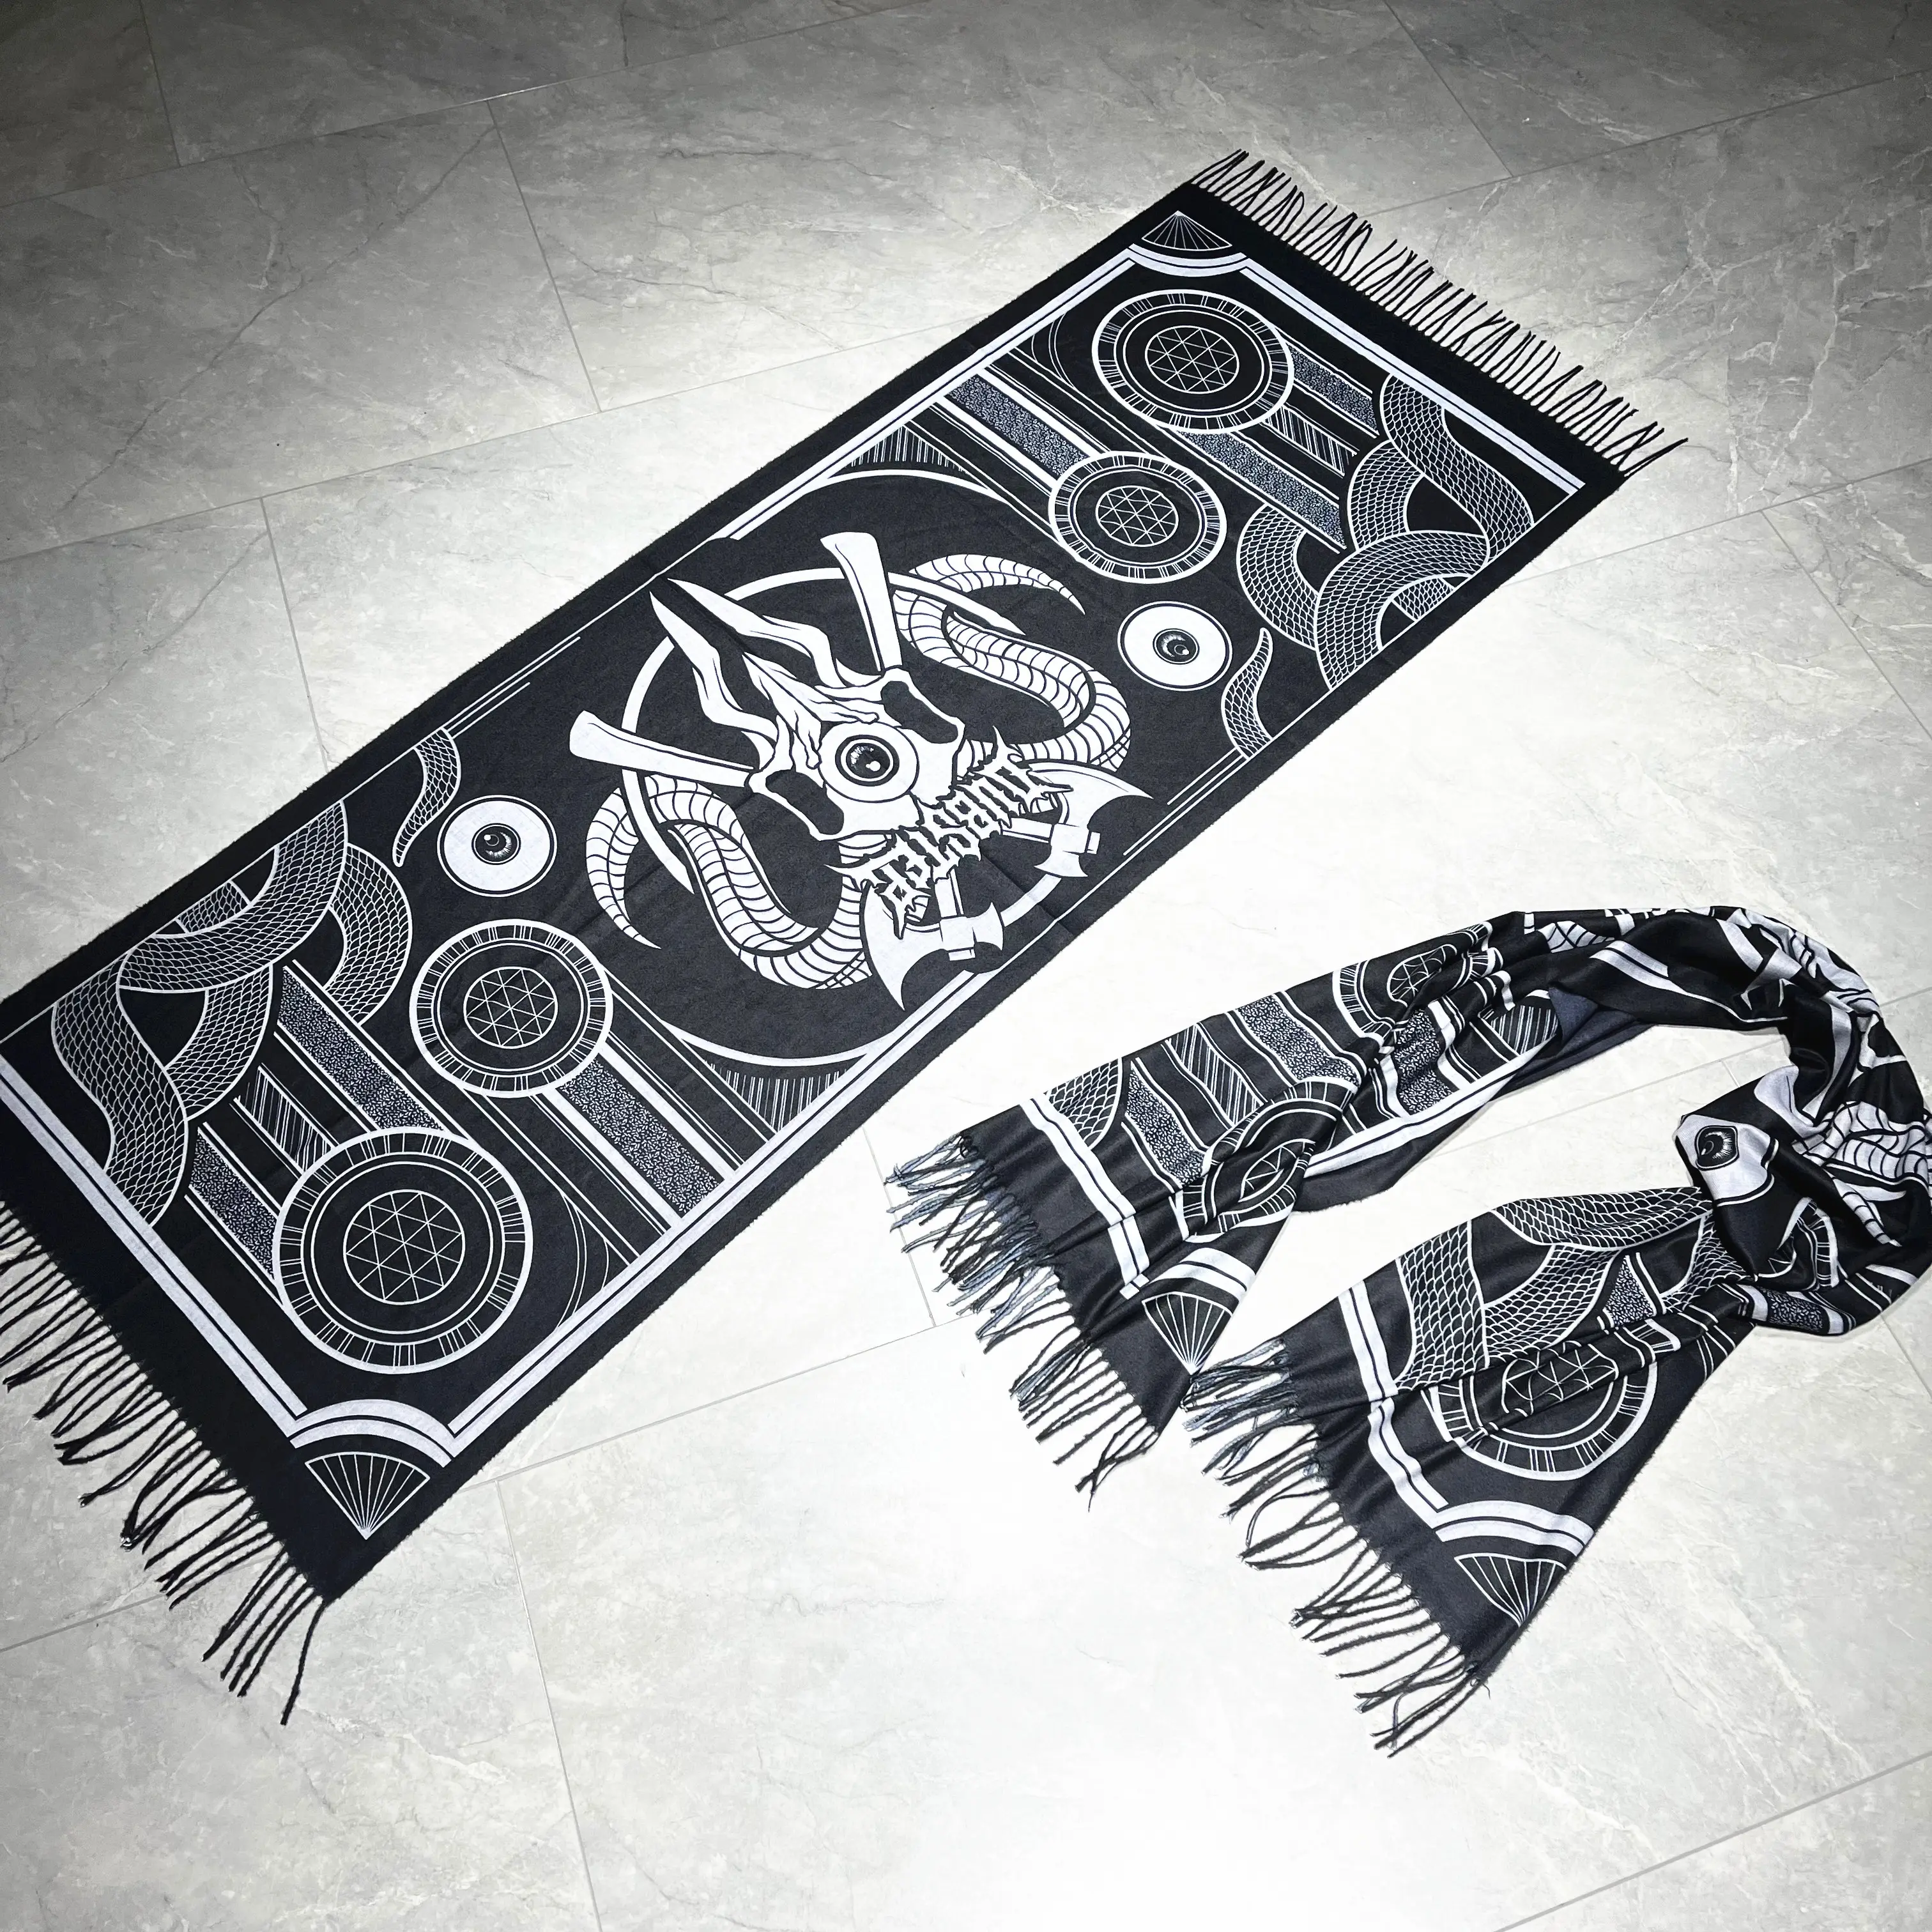 Теплый мягкий 200 70 см черный кашемировый дизайн другие шарфы шали высокого качества на заказ пашмины